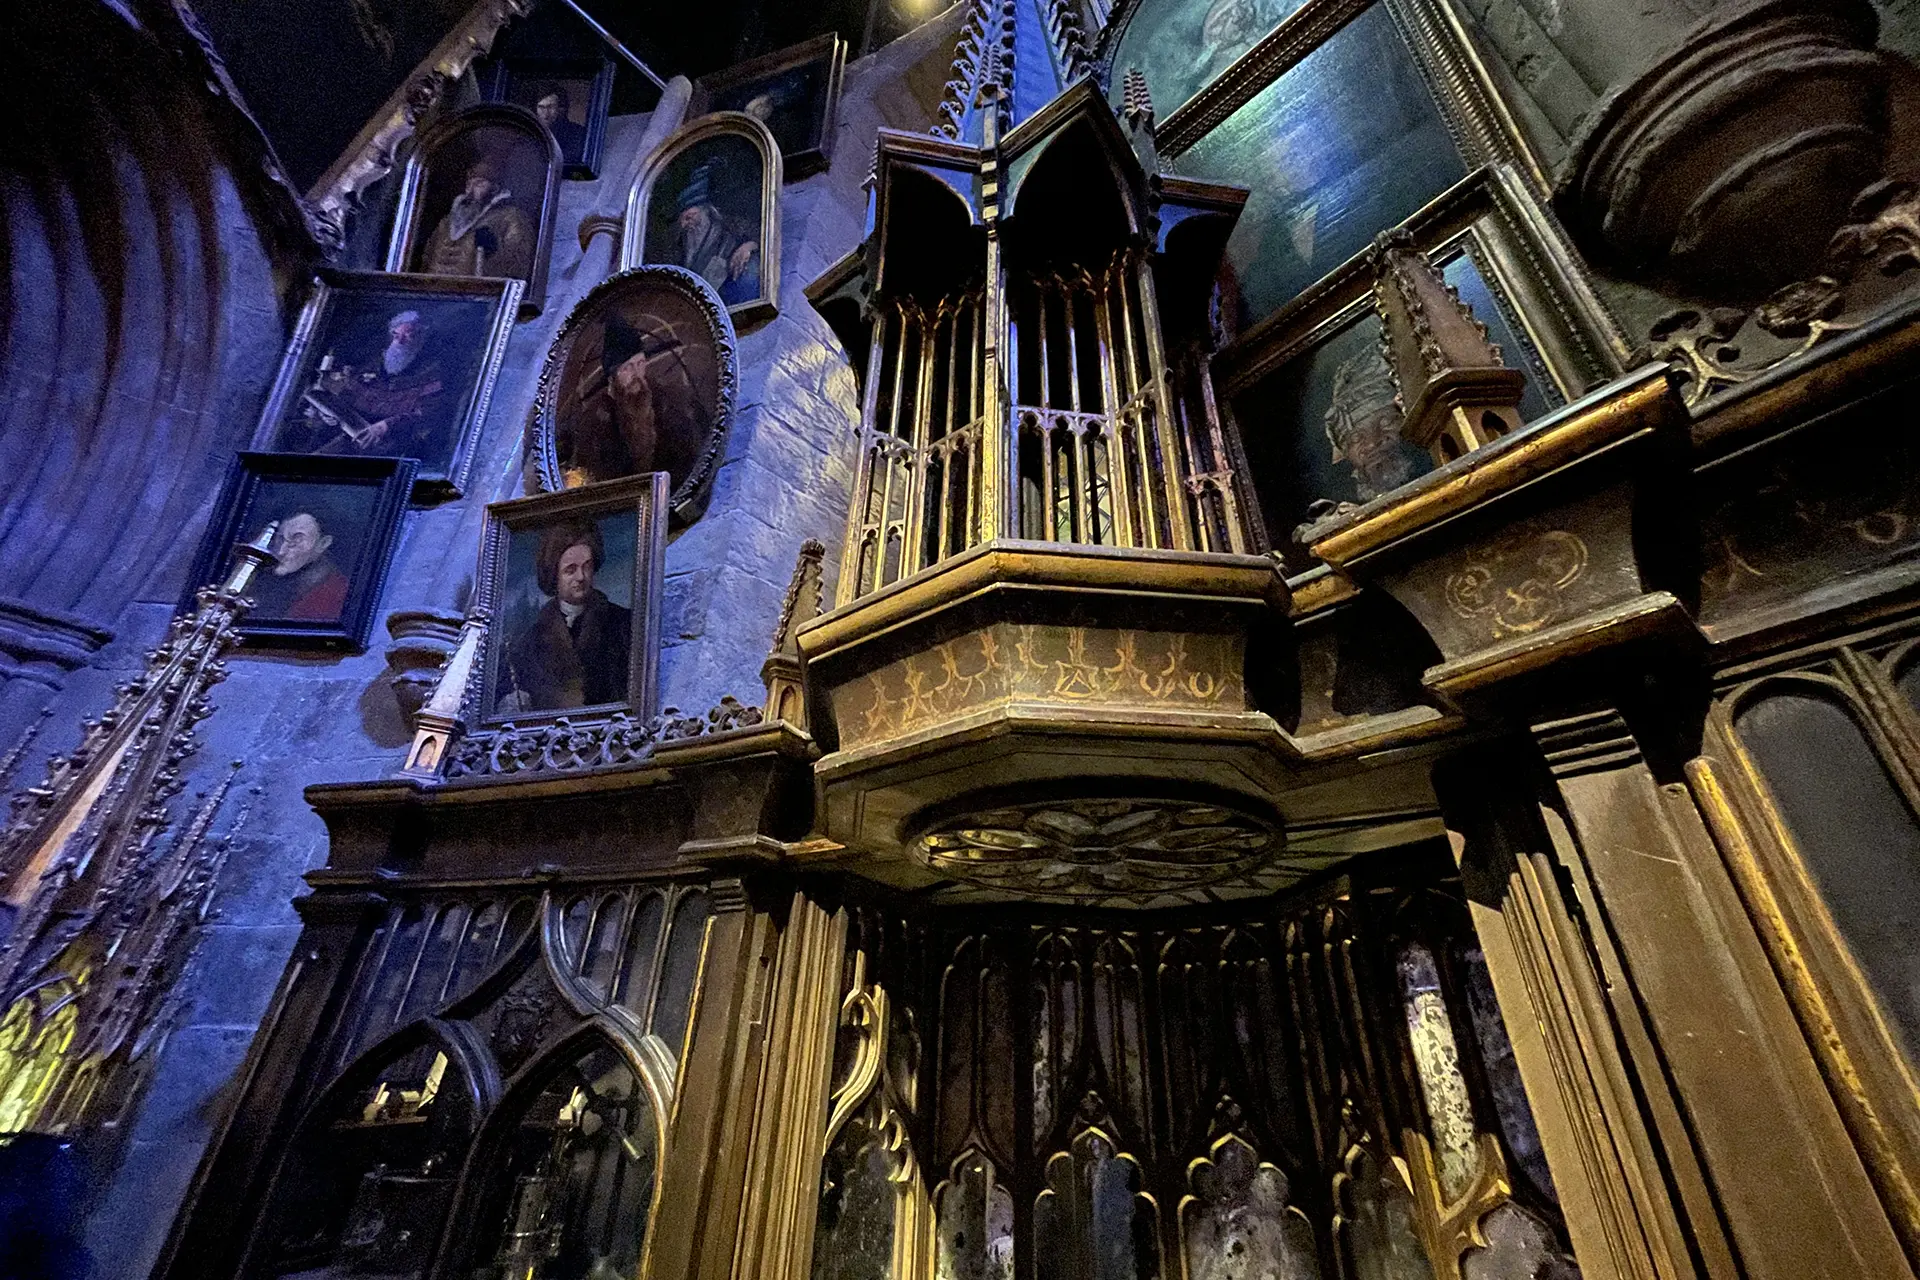 Collectors et objets de collection Harry Potter